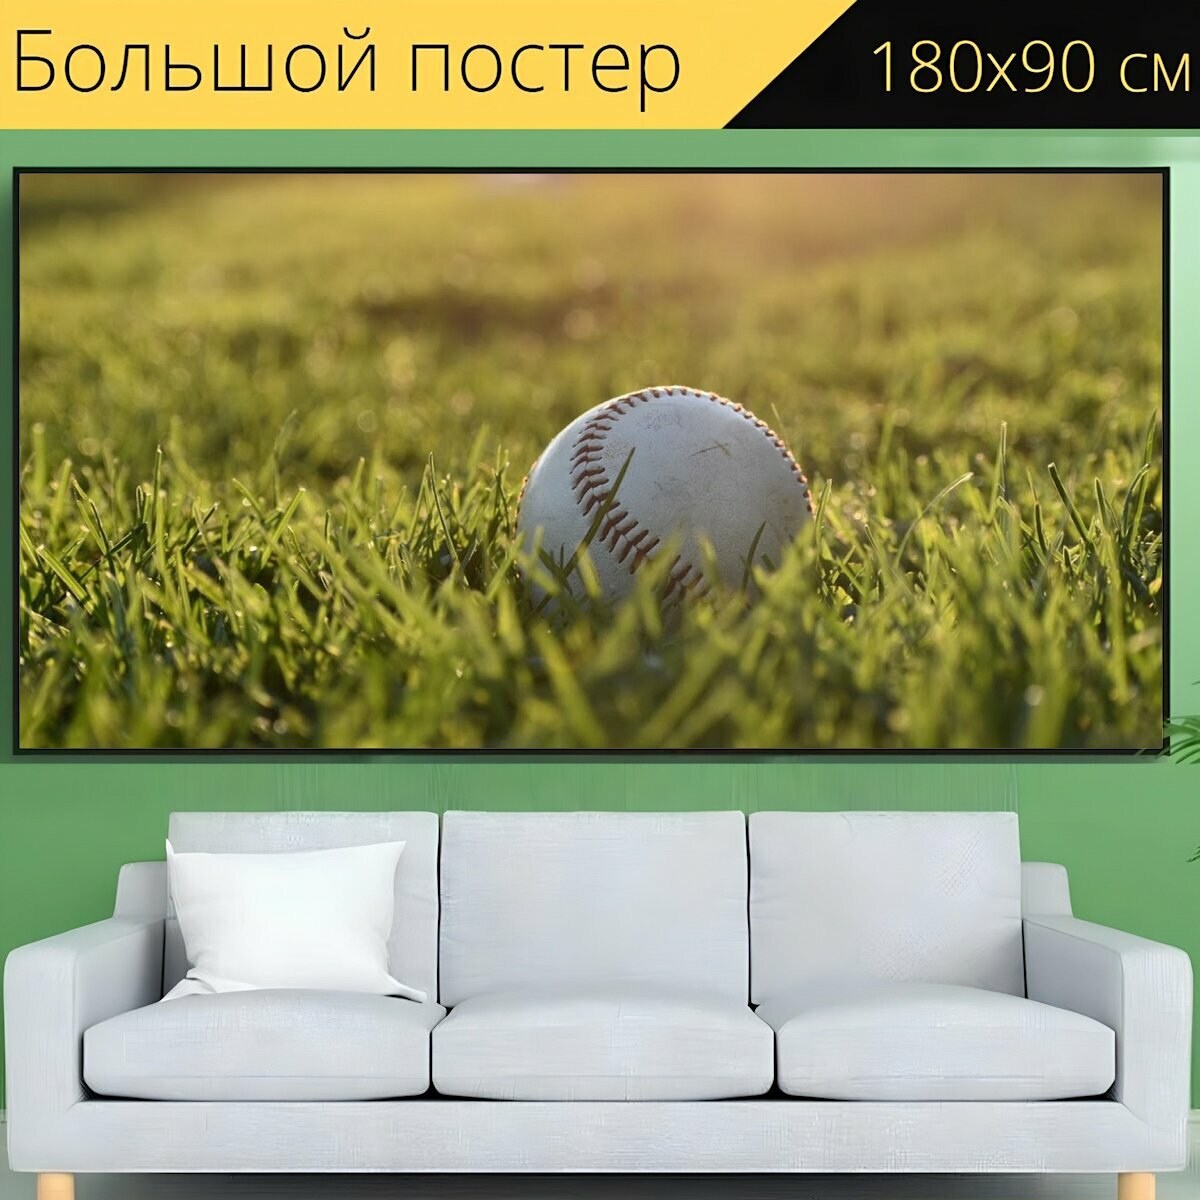 Большой постер "Бейсбол открытый виды спорта" 180 x 90 см. для интерьера